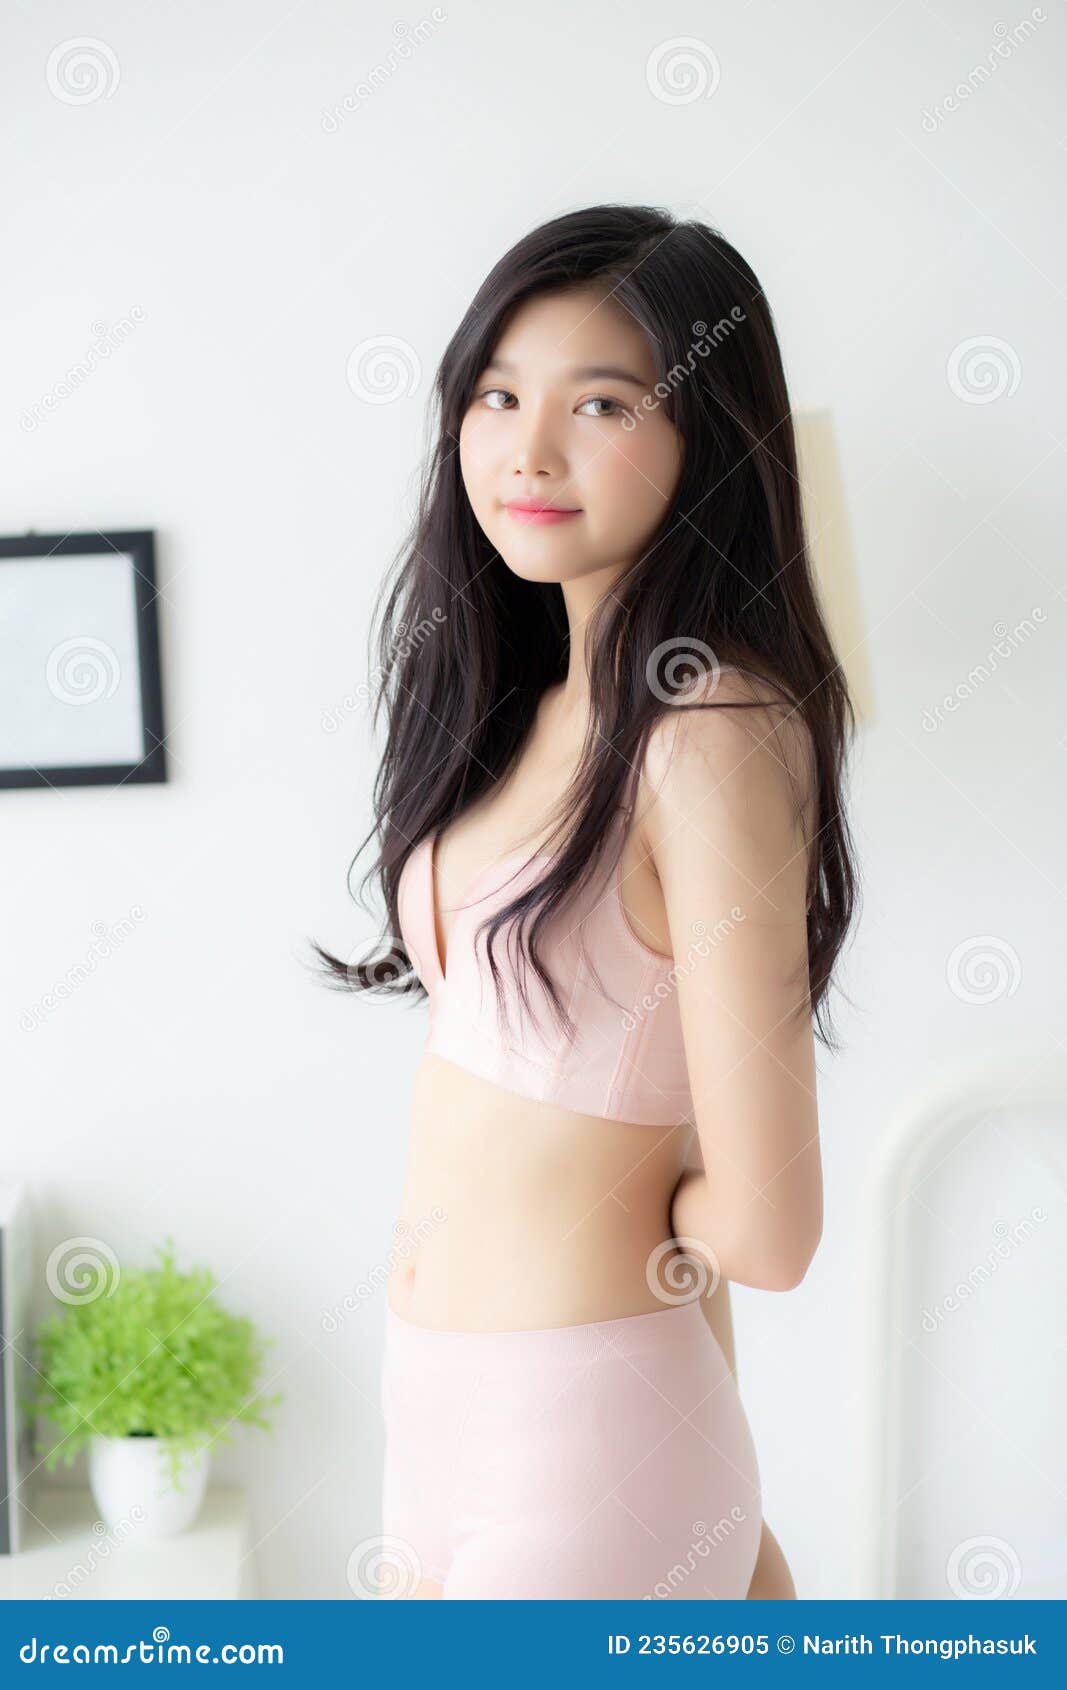 asian girls in panties pics